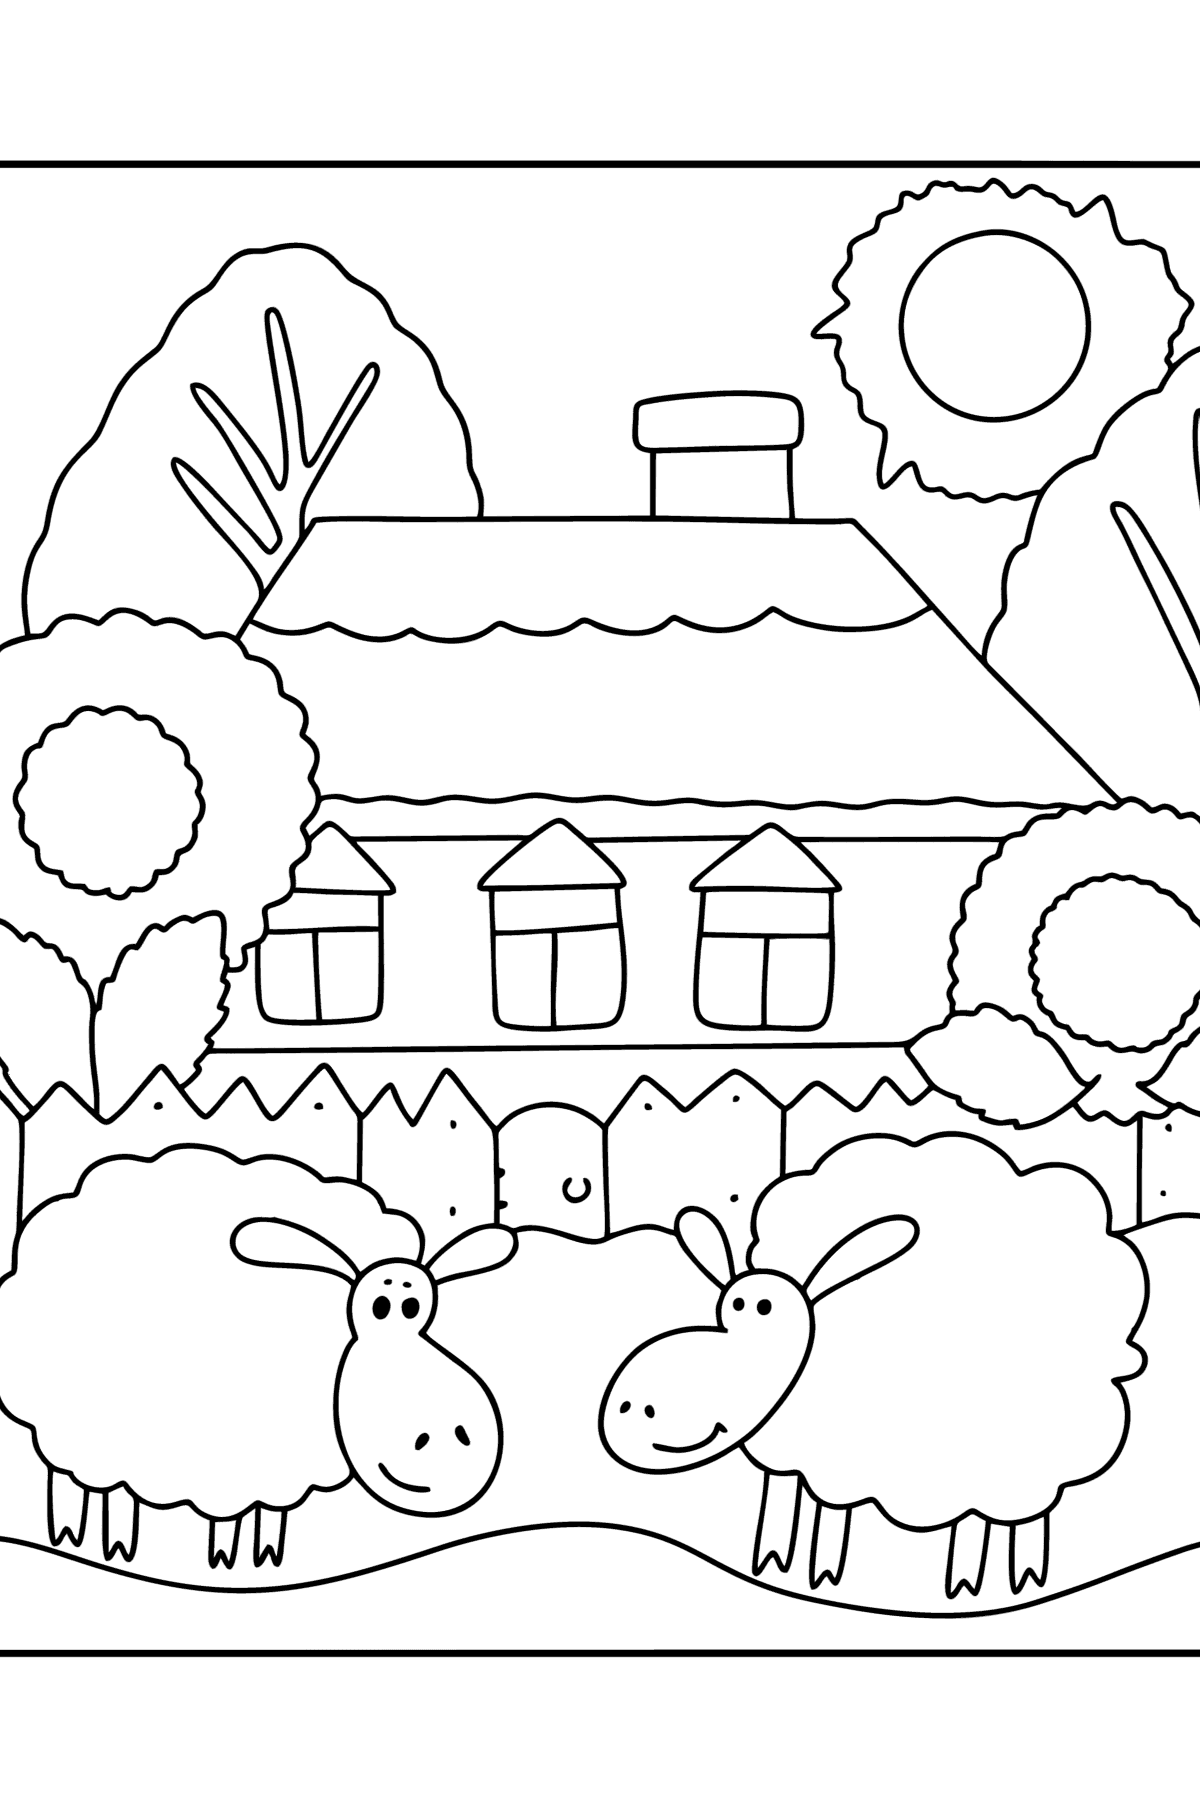 Boyama sayfası çiftlik evi - Boyamalar çocuklar için